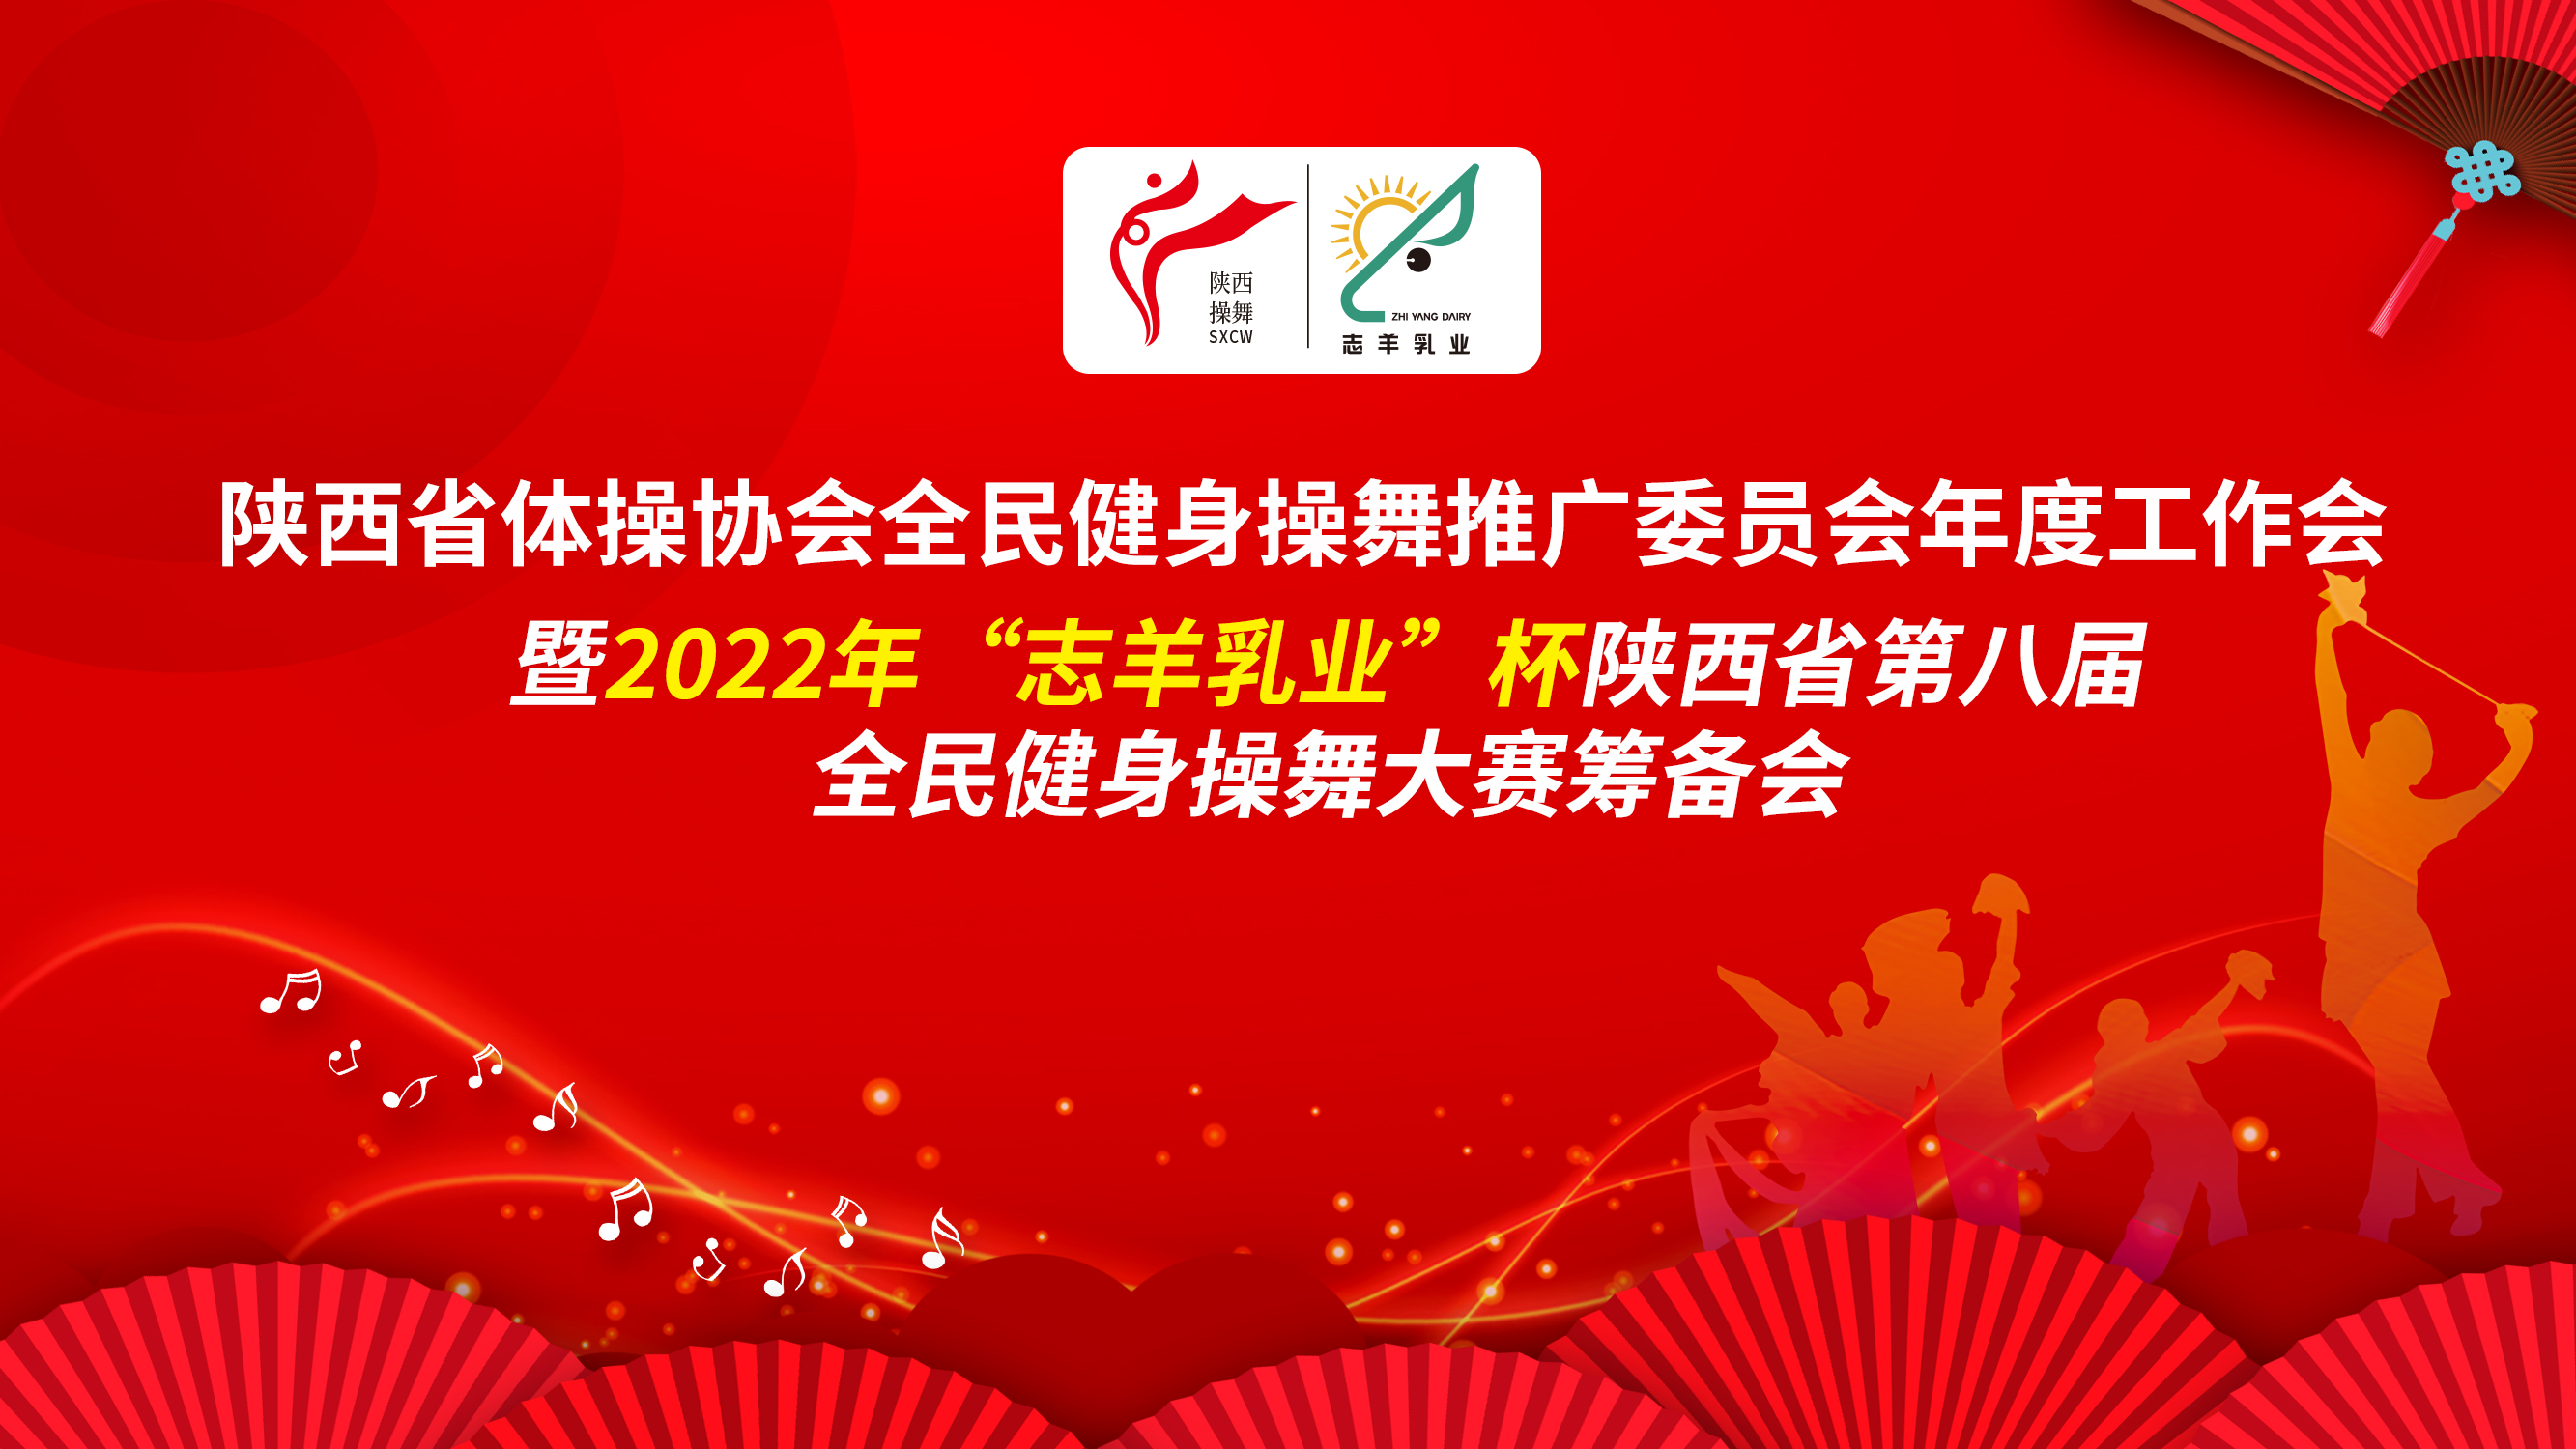 2022年“志羊乳业杯”陕西省第八届全民健身操舞大赛筹备会在西安隆重召开